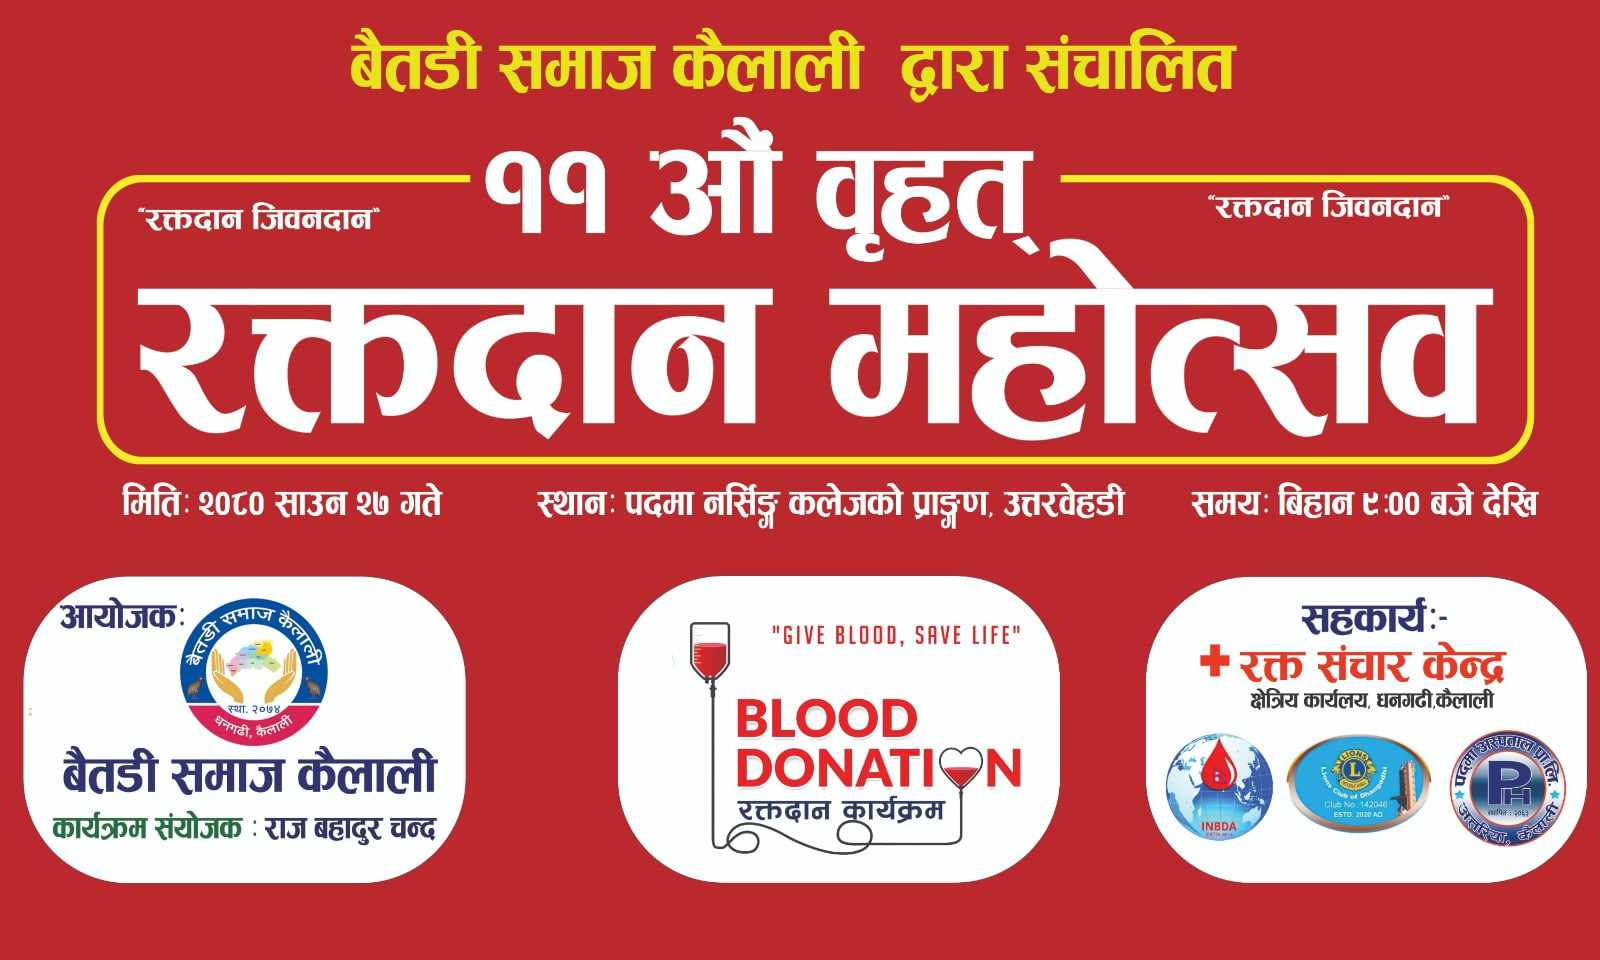 बैतडी समाज कैलालीले शनिबार धनगढीमा बृहत् रक्तदान कार्यक्रम गर्दै